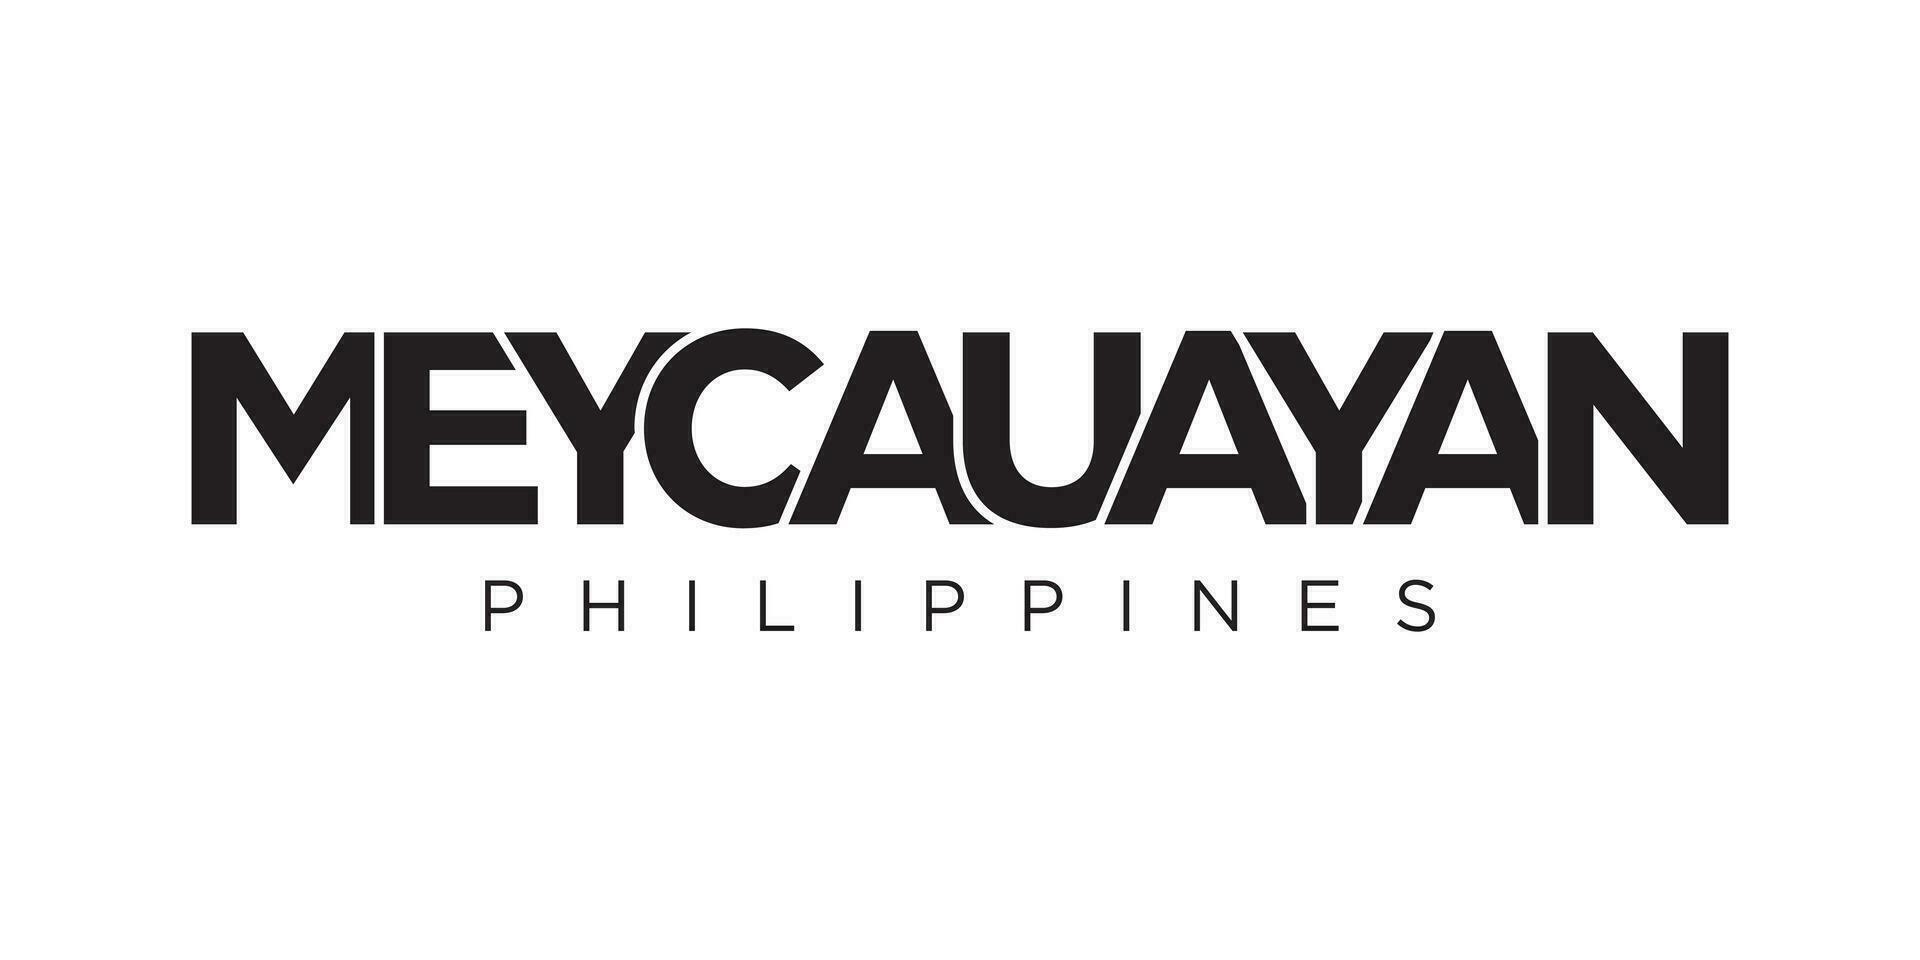 meycauayan im das Philippinen Emblem. das Design Eigenschaften ein geometrisch Stil, Vektor Illustration mit Fett gedruckt Typografie im ein modern Schriftart. das Grafik Slogan Beschriftung.